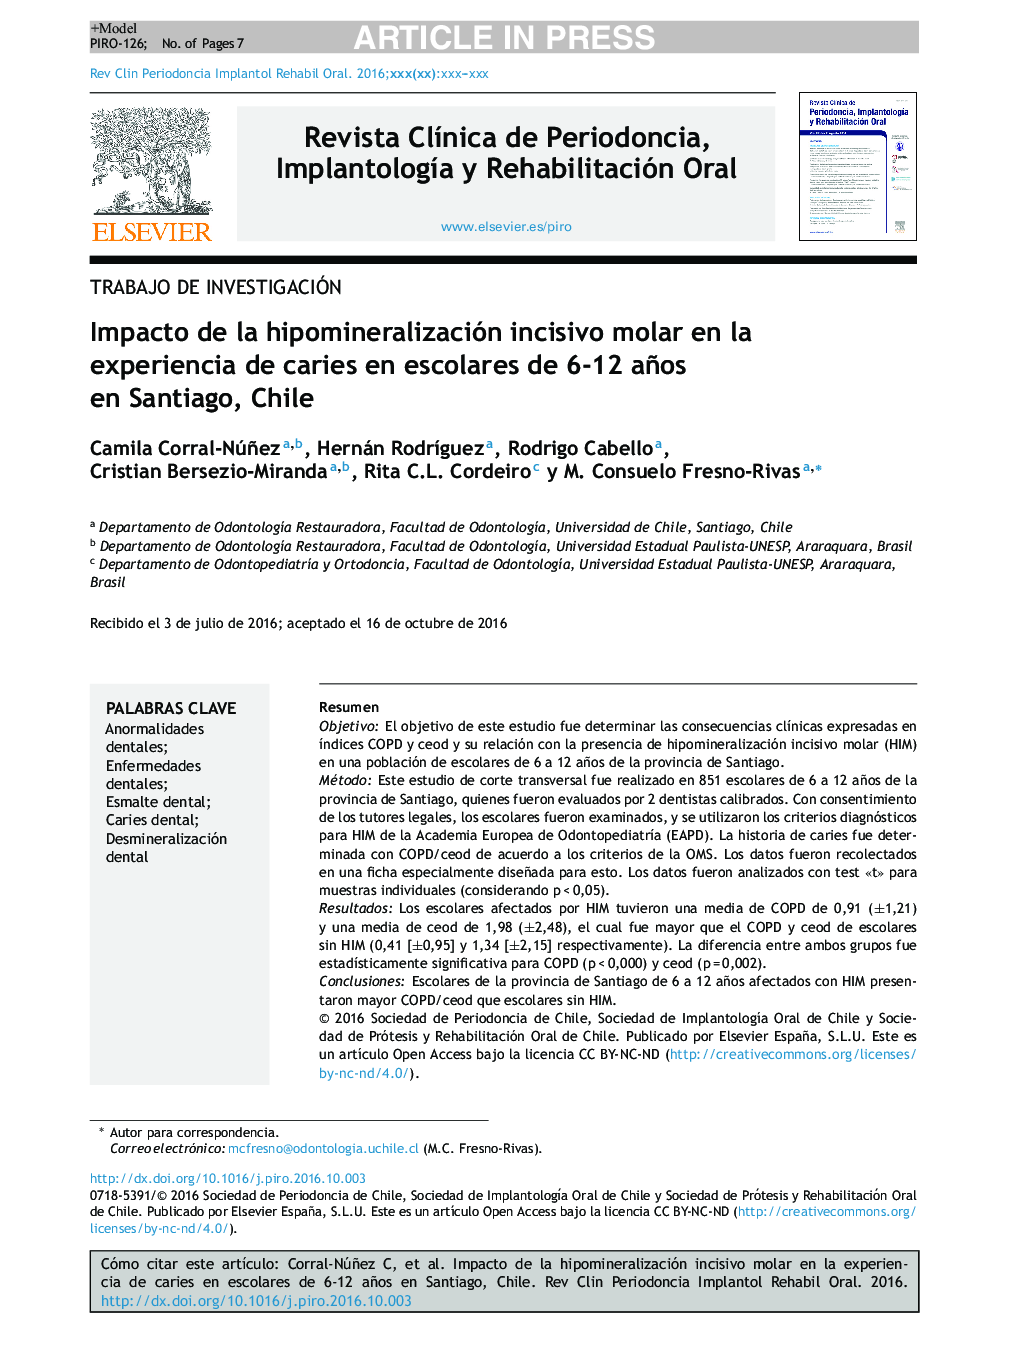 Impacto de la hipomineralización incisivo molar en la experiencia de caries en escolares de 6-12 años en Santiago, Chile